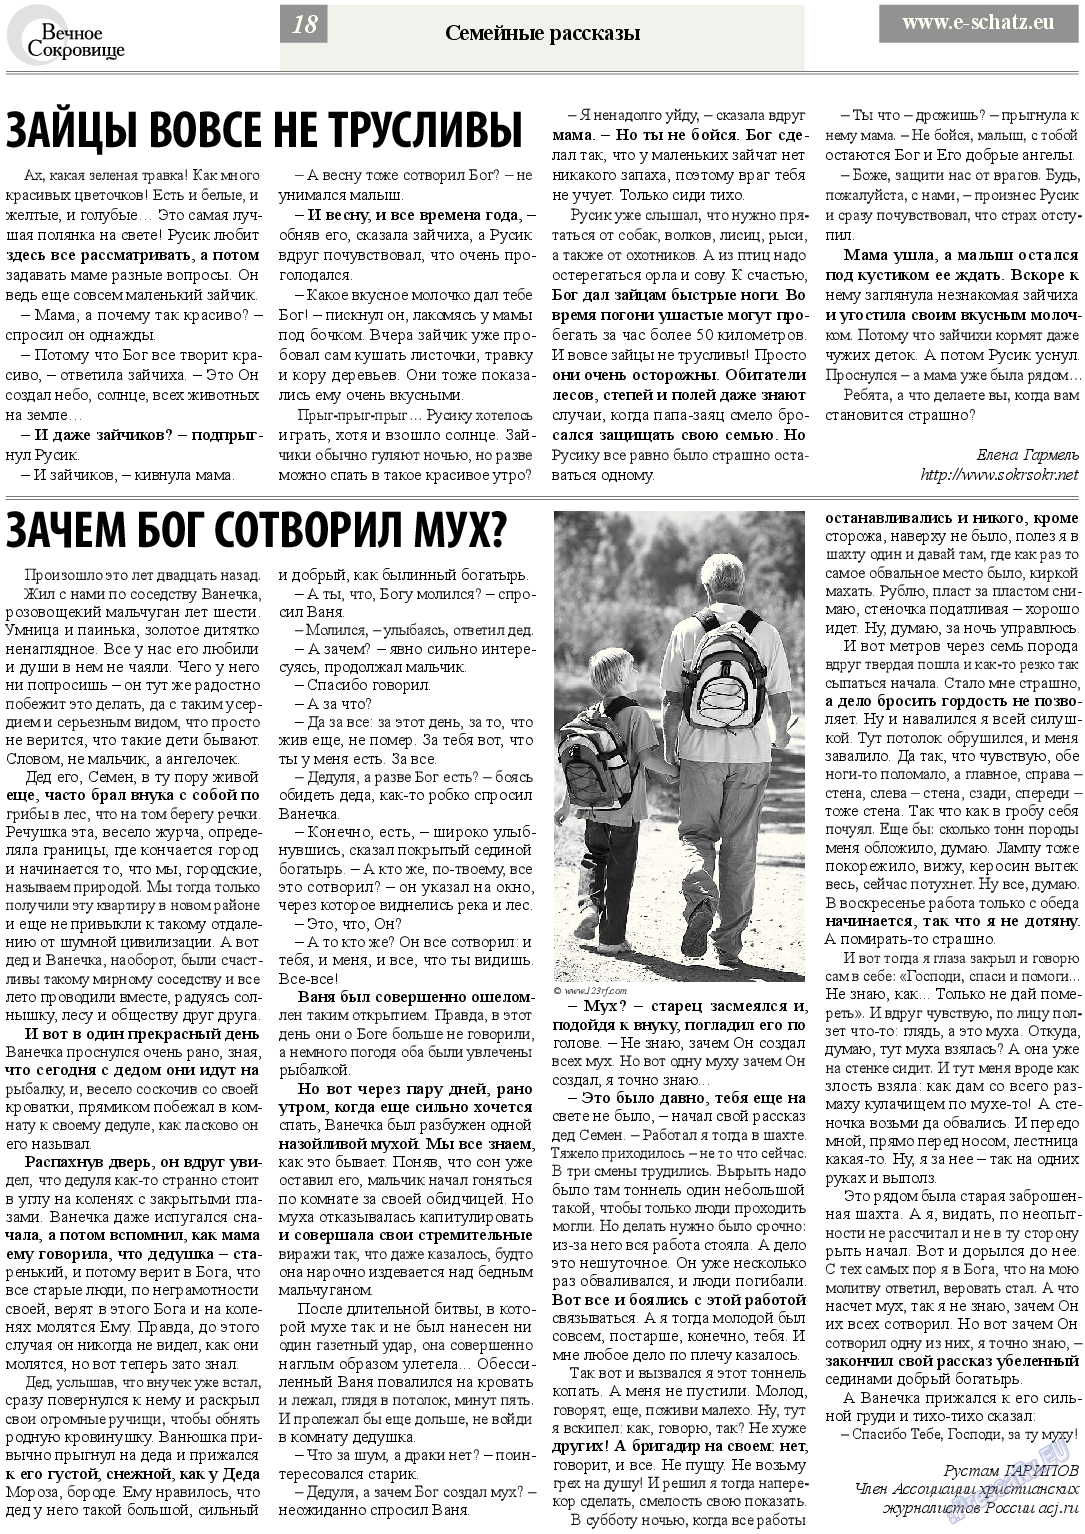 Вечное сокровище, газета. 2013 №4 стр.18